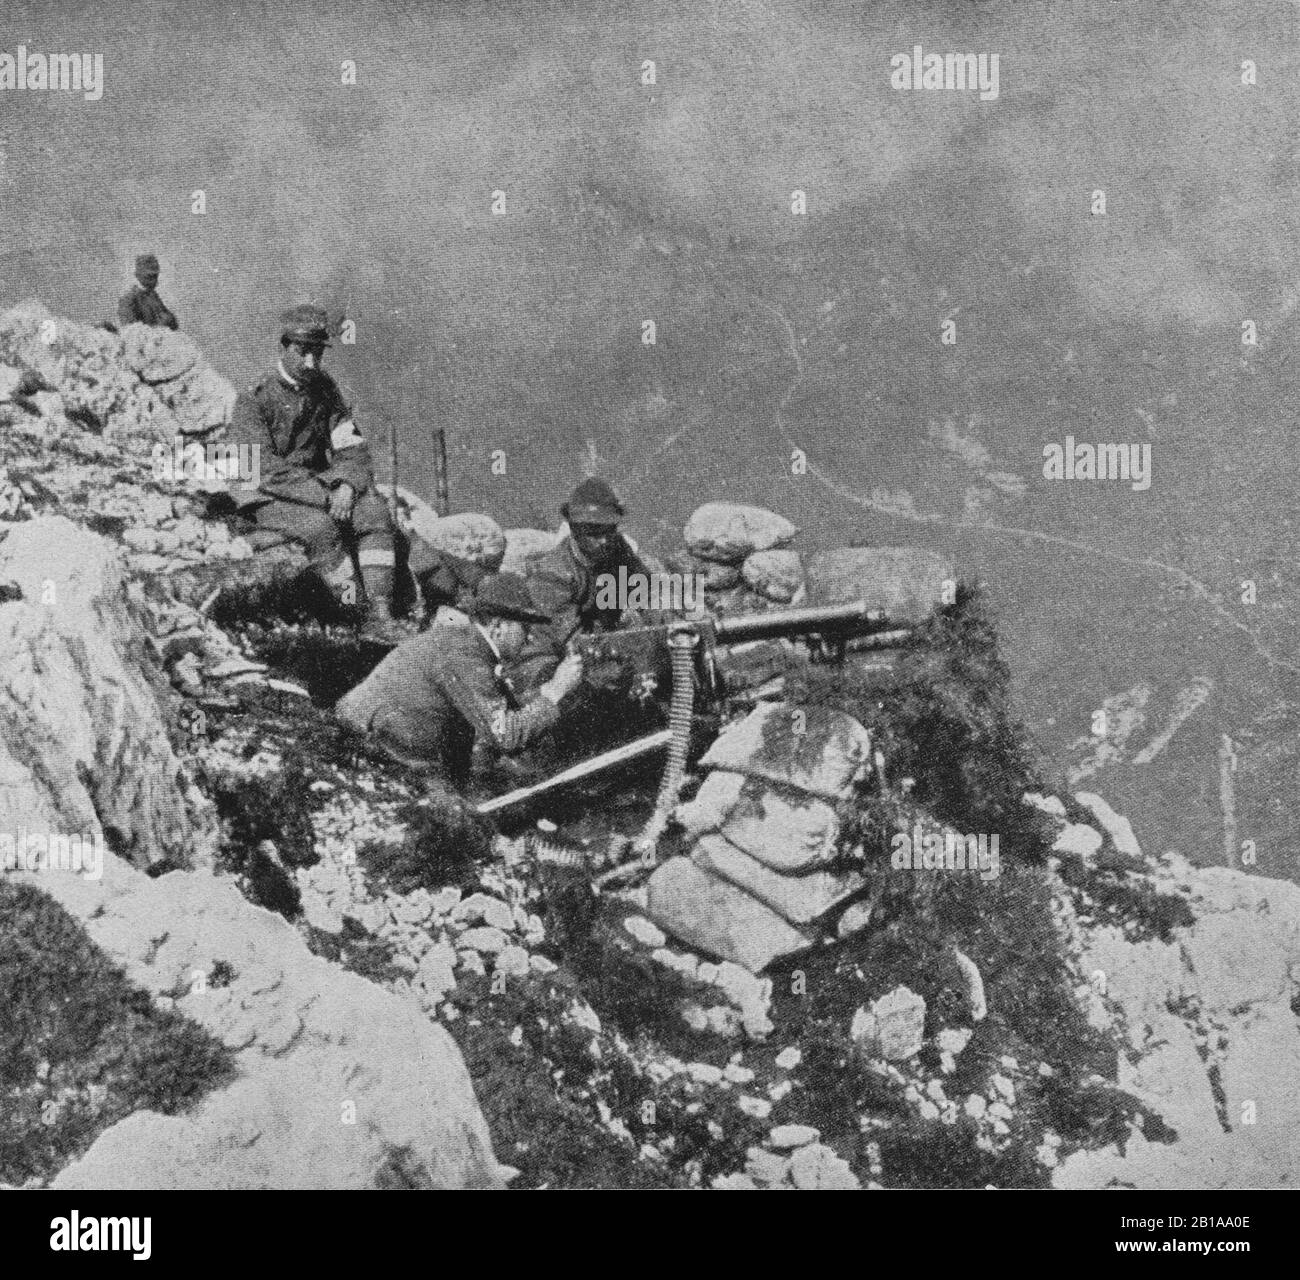 Ein Foto von italienischen Truppen, die ein schweres Maschinengewehr auf einem Berg in der Nähe von Gorizia an der slowenischen Grenze im Konflikt zwischen Italien und dem Österreich-ungarischen Reich während des ersten Weltkriegs bemannen Stockfoto